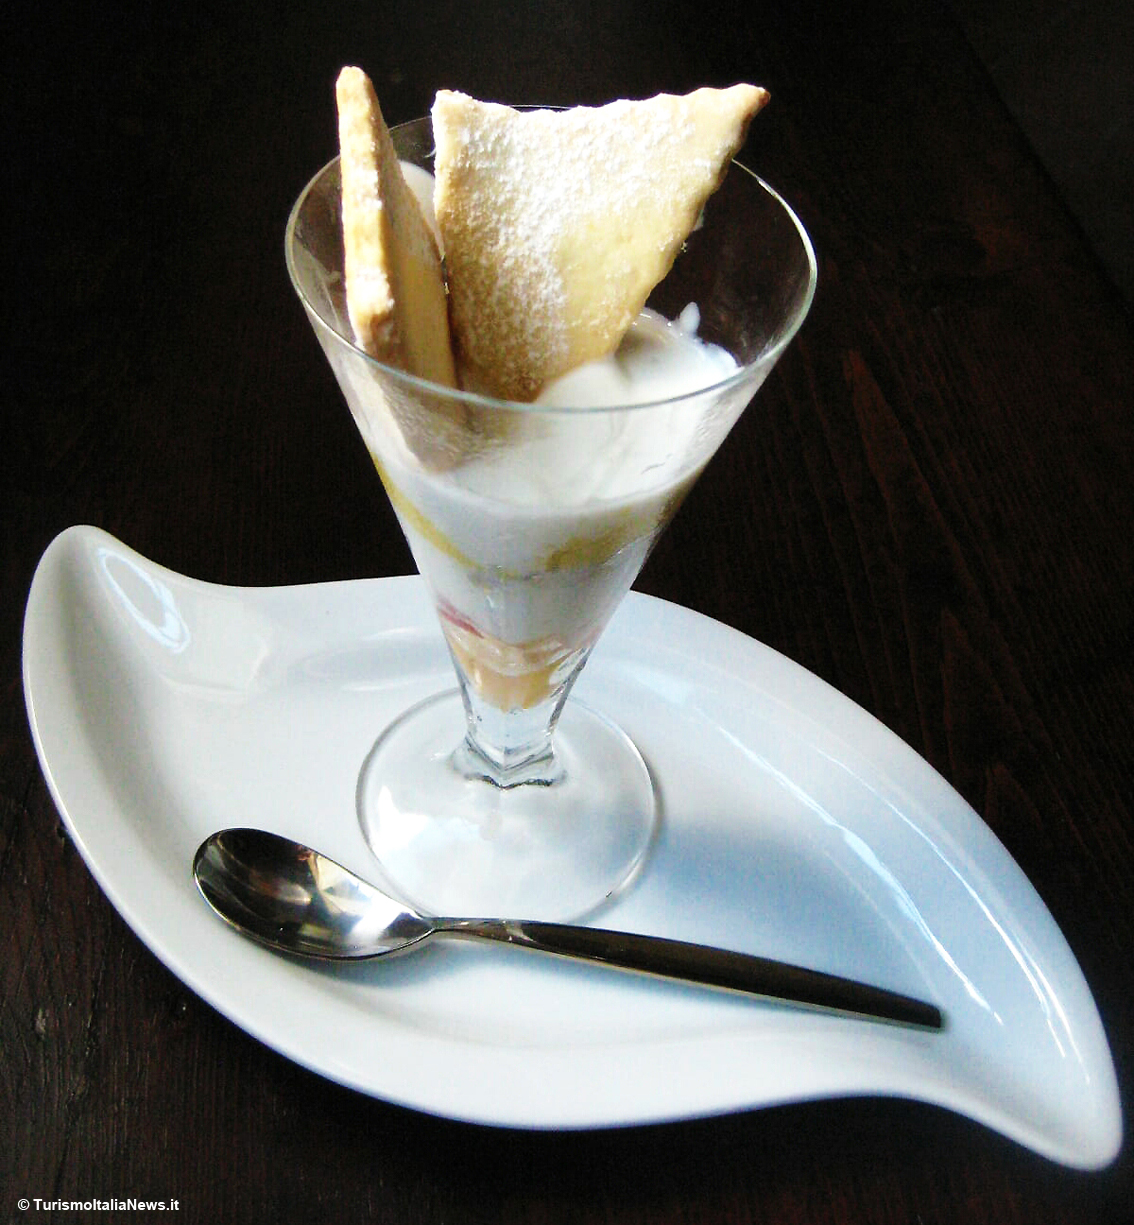 Le ricette di Casa Spineto: Crema di mascarpone con frutta al vetro, indiscusso dessert estivo